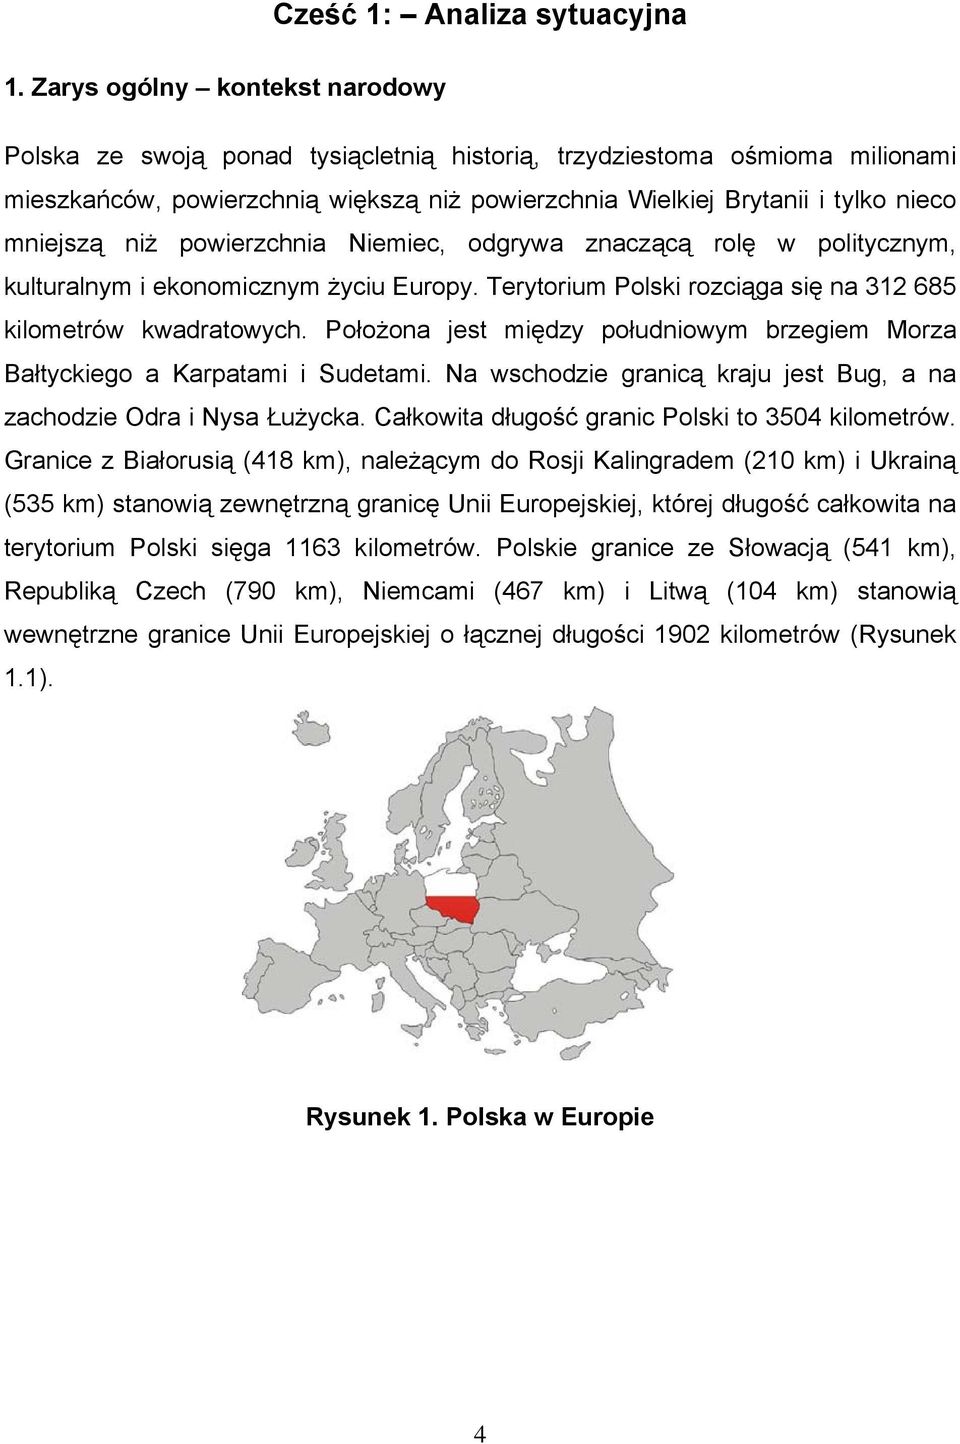 niż powierzchnia Niemiec, odgrywa znaczącą rolę w politycznym, kulturalnym i ekonomicznym życiu Europy. Terytorium Polski rozciąga się na 312 685 kilometrów kwadratowych.